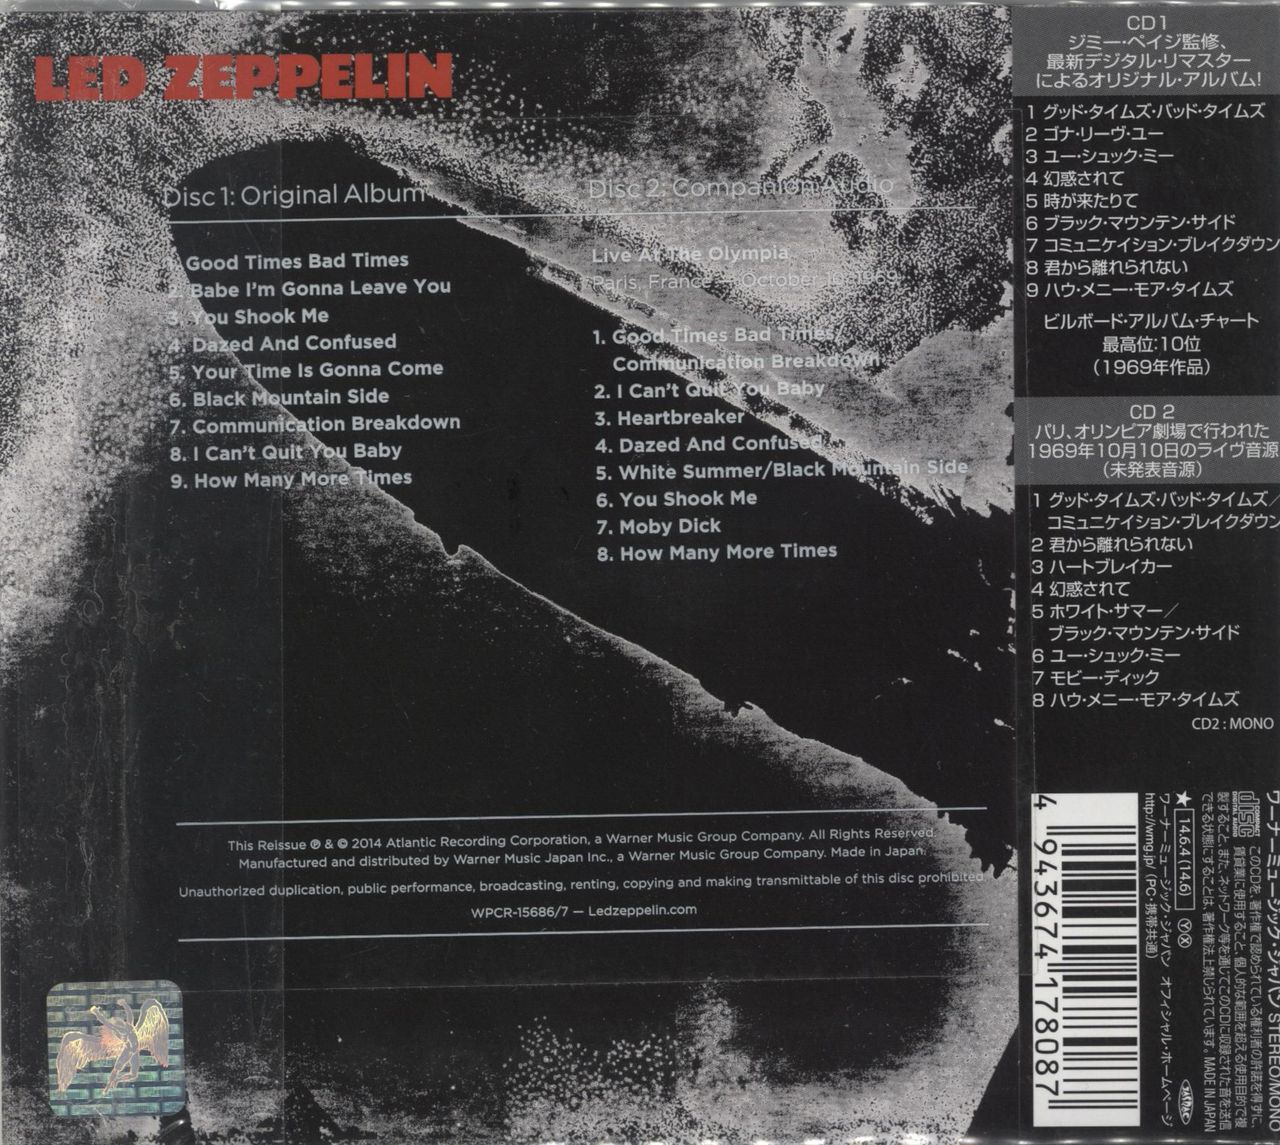 Led Zeppelin Led Zeppelin: Deluxe Edition Japanese 2-CD album set —  RareVinyl.com